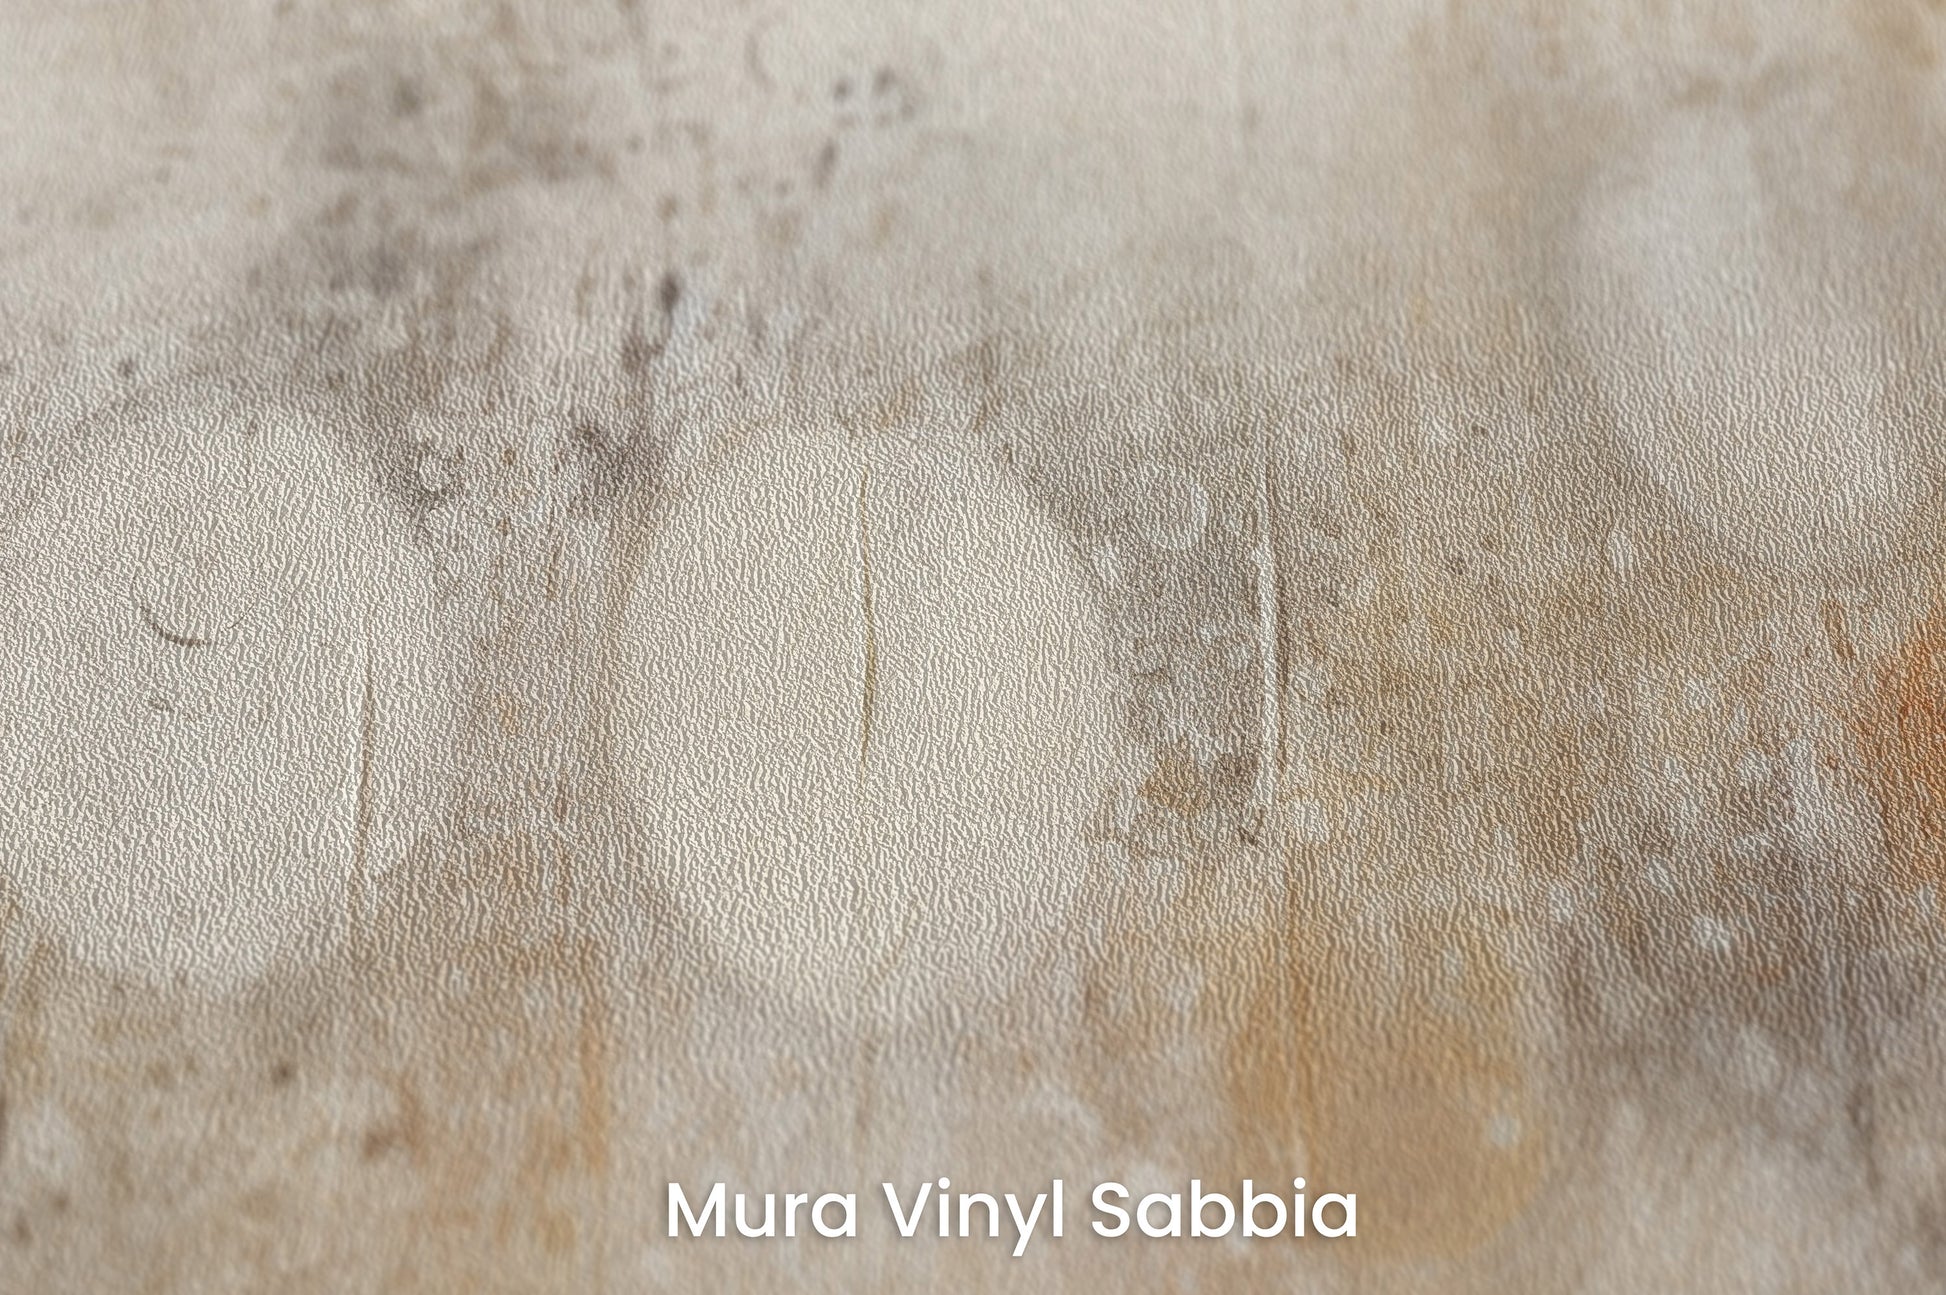 Zbliżenie na artystyczną fototapetę o nazwie ETHER REALM SPHERES na podłożu Mura Vinyl Sabbia struktura grubego ziarna piasku.